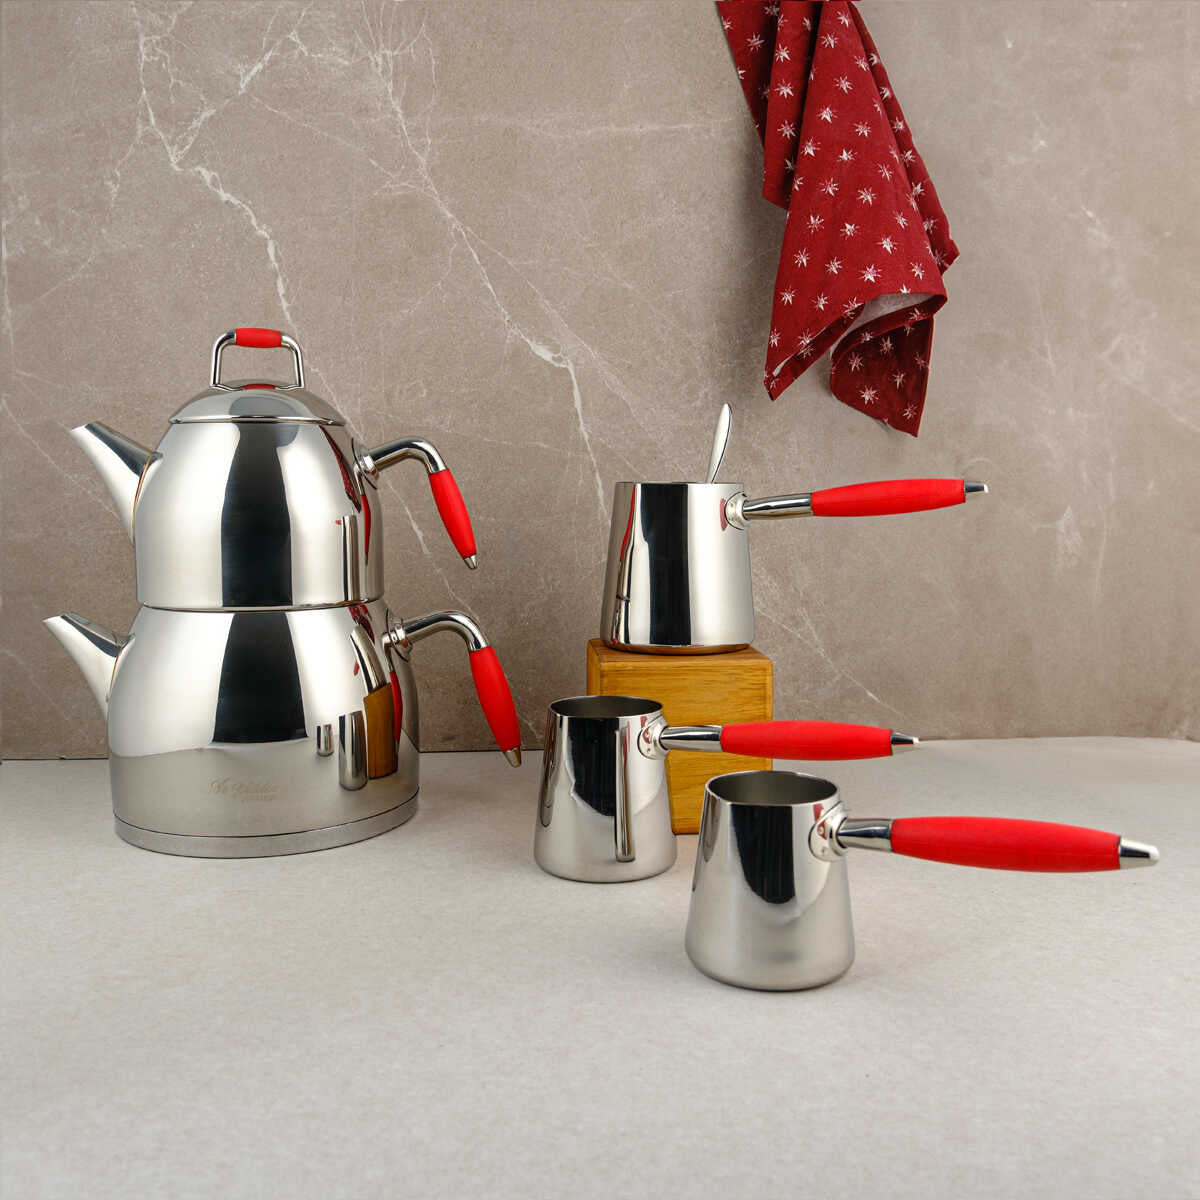 Aryıldız Family Teapot and Coffee Pot Set Red